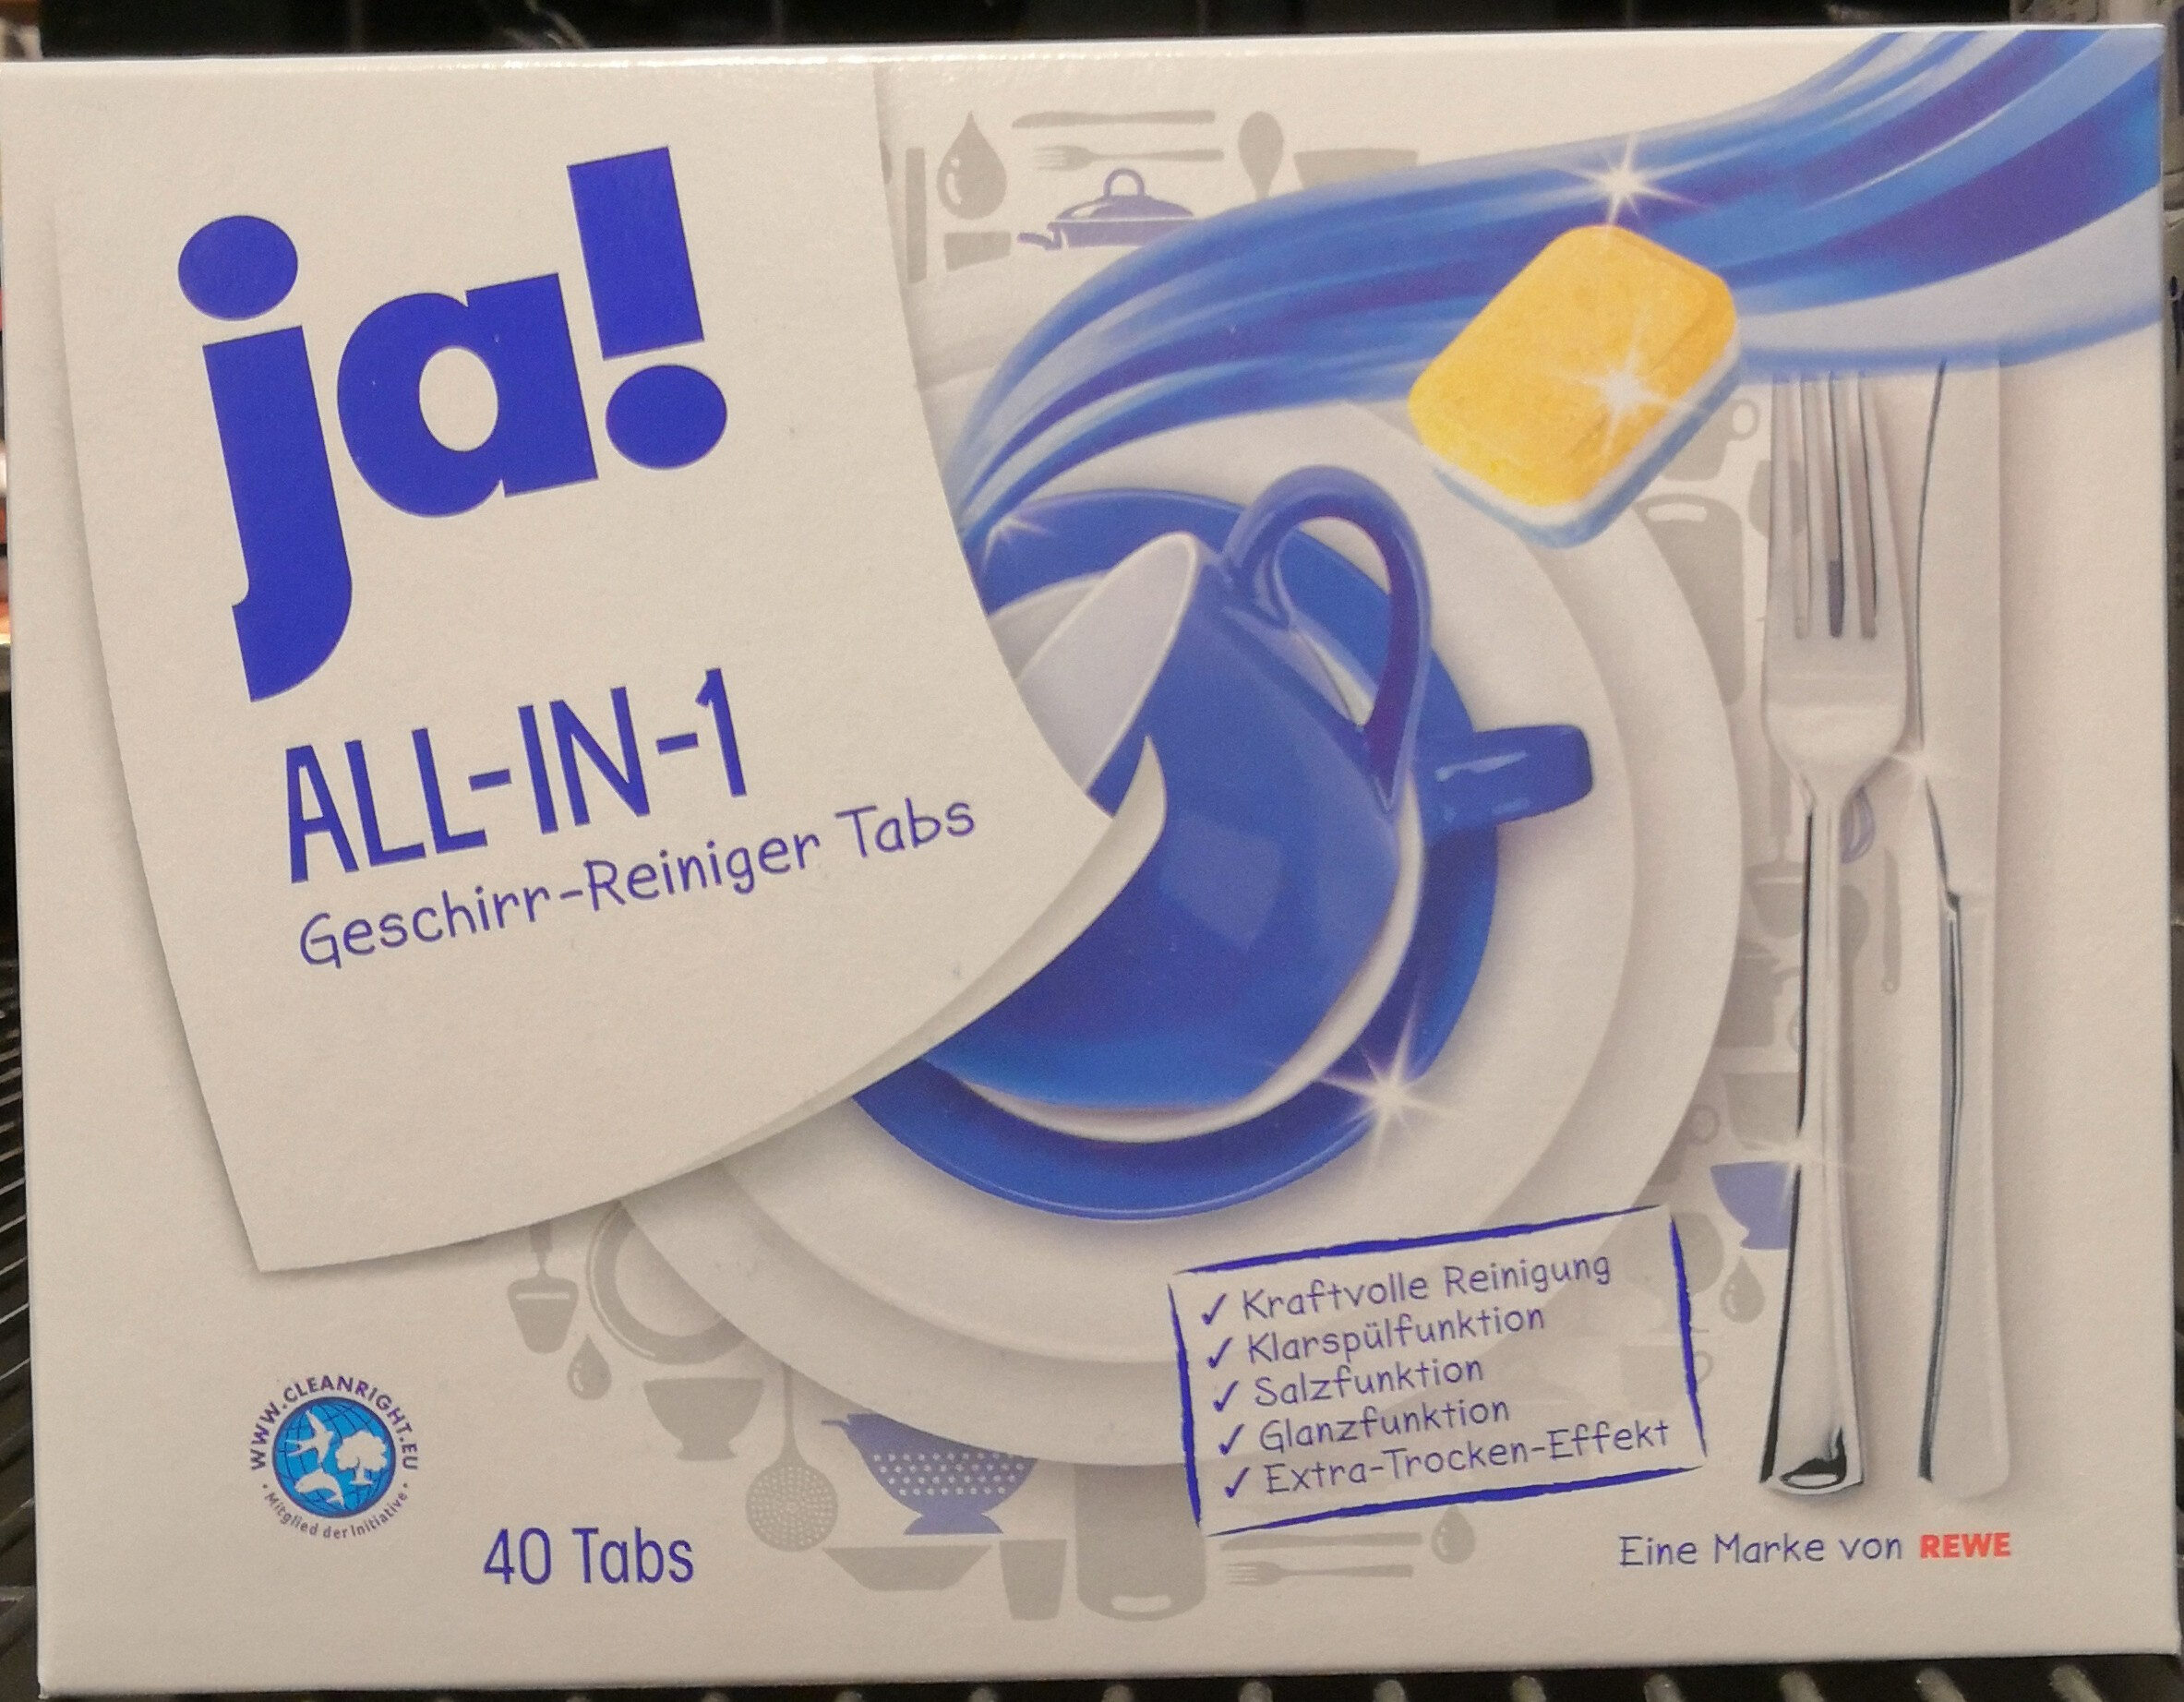 ALL-IN-1 Geschirr-Reiniger-Tabs - Product - de